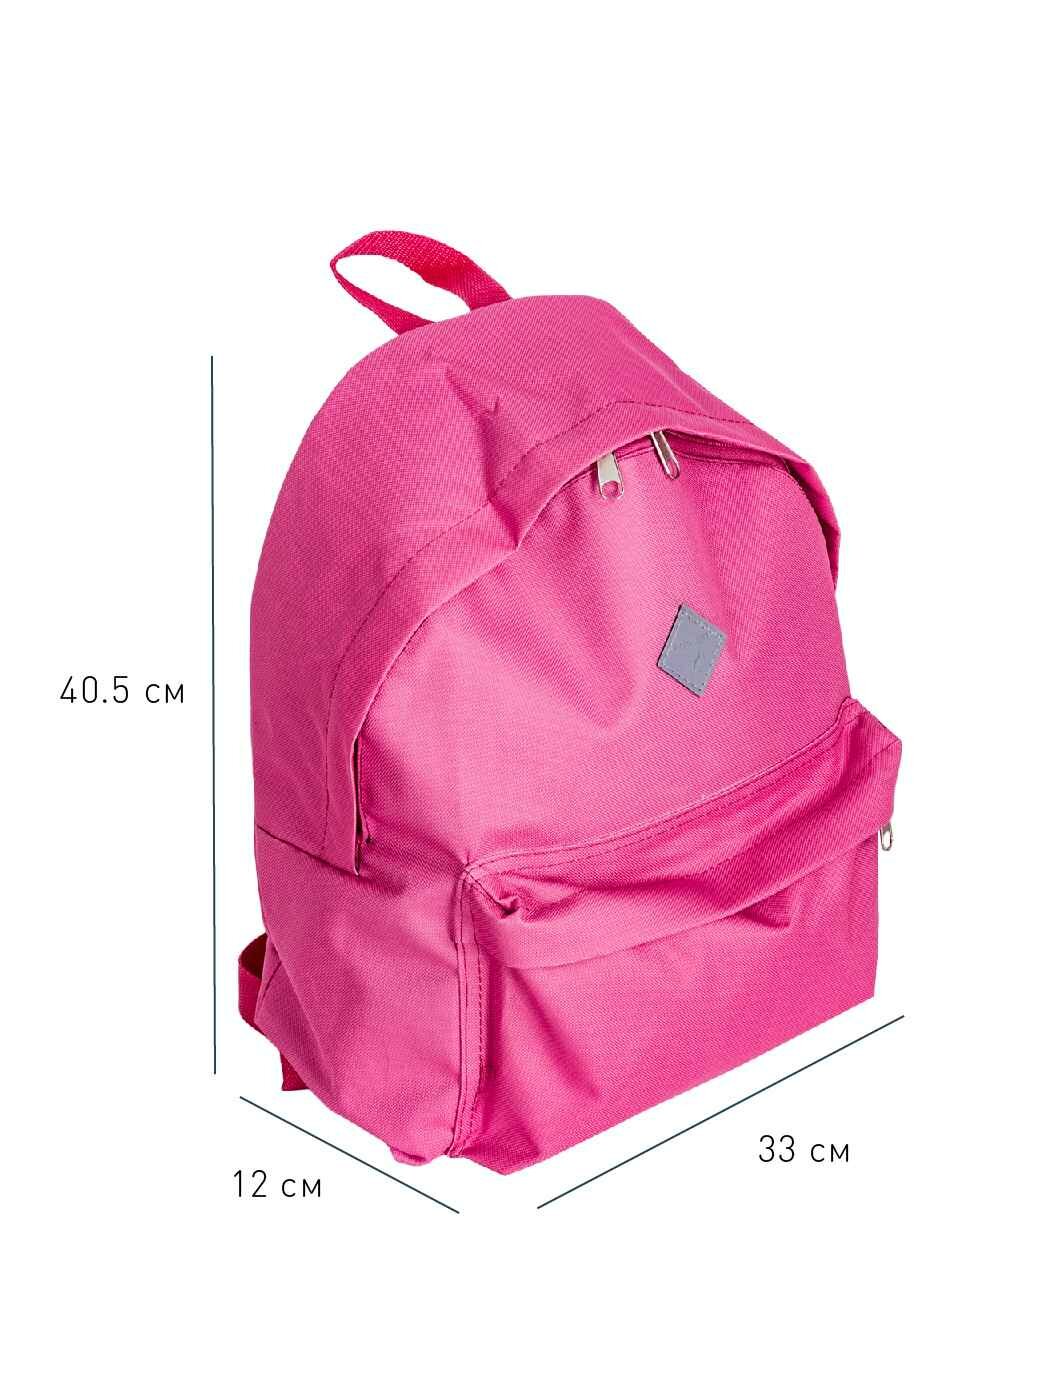 Рюкзак городской Fusion FBP-1501 Pink повышенной прочности с водоотталкивающей пропиткой и ортопедическими лямками